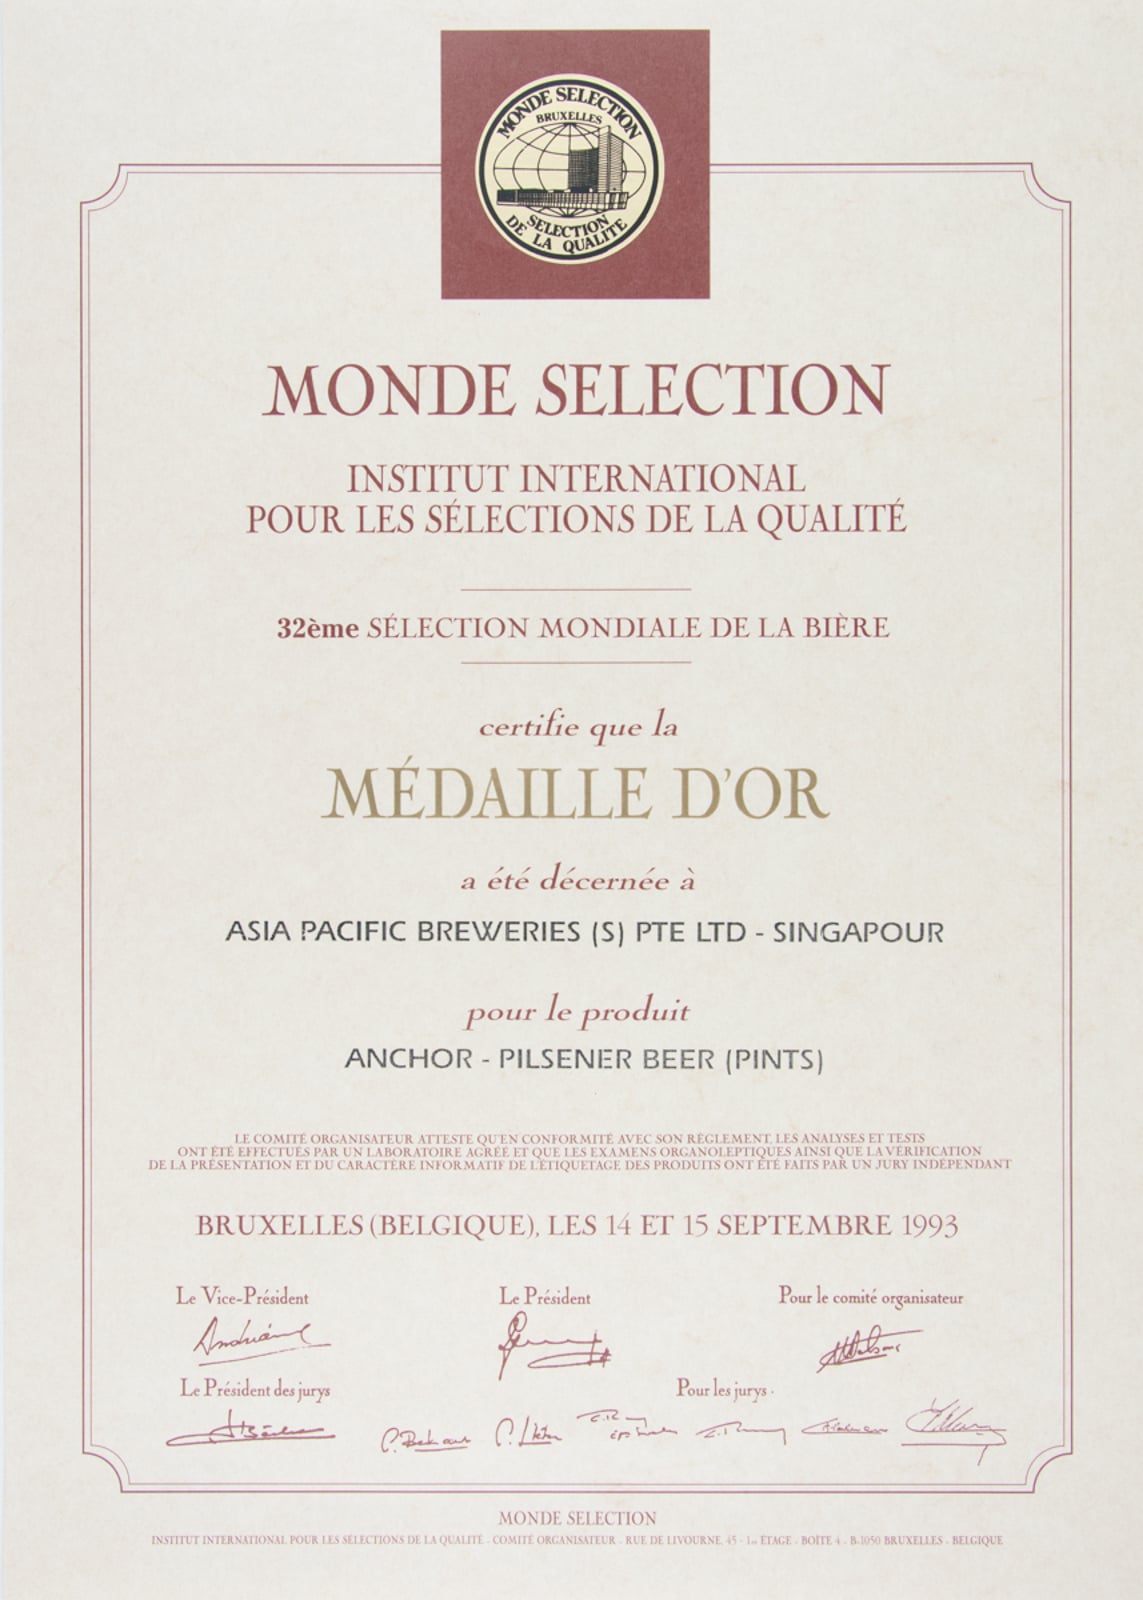 Anchor - Pilsener Beer (Pints) - Médaille d'Or, Monde Sélection Certificate 1993